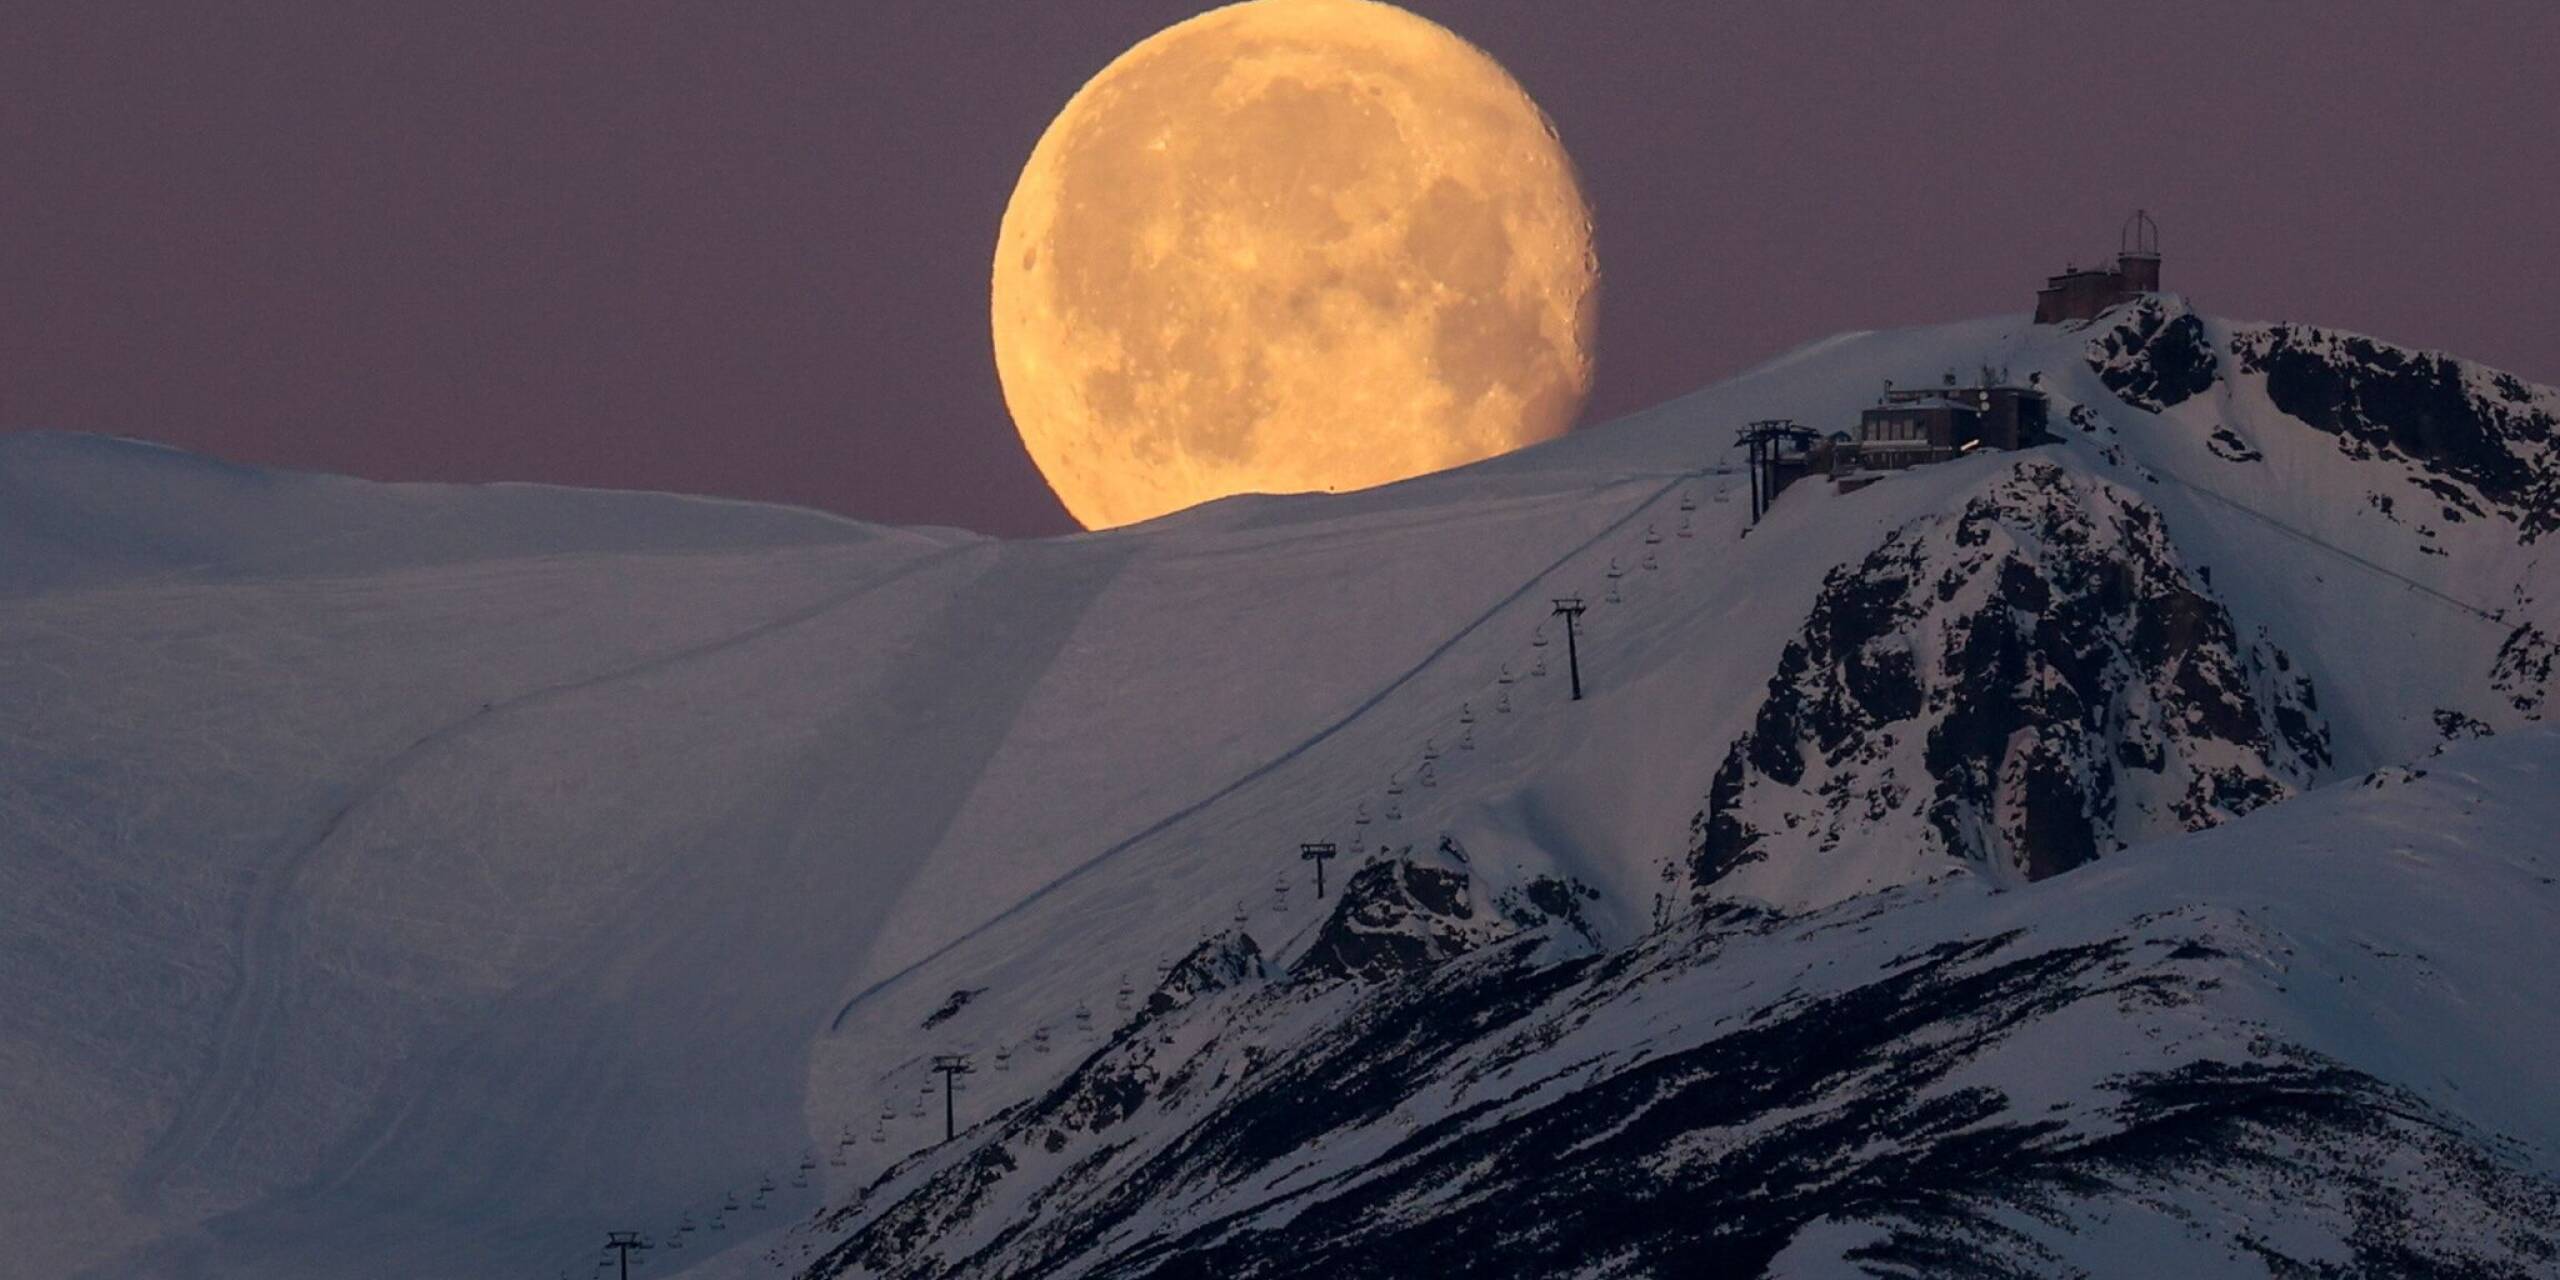 Der Monduntergang über dem Berg Kasprowy Wierch, in den polnischen Tatra-Bergen, von Polana Zgorzelisko aus gesehen.